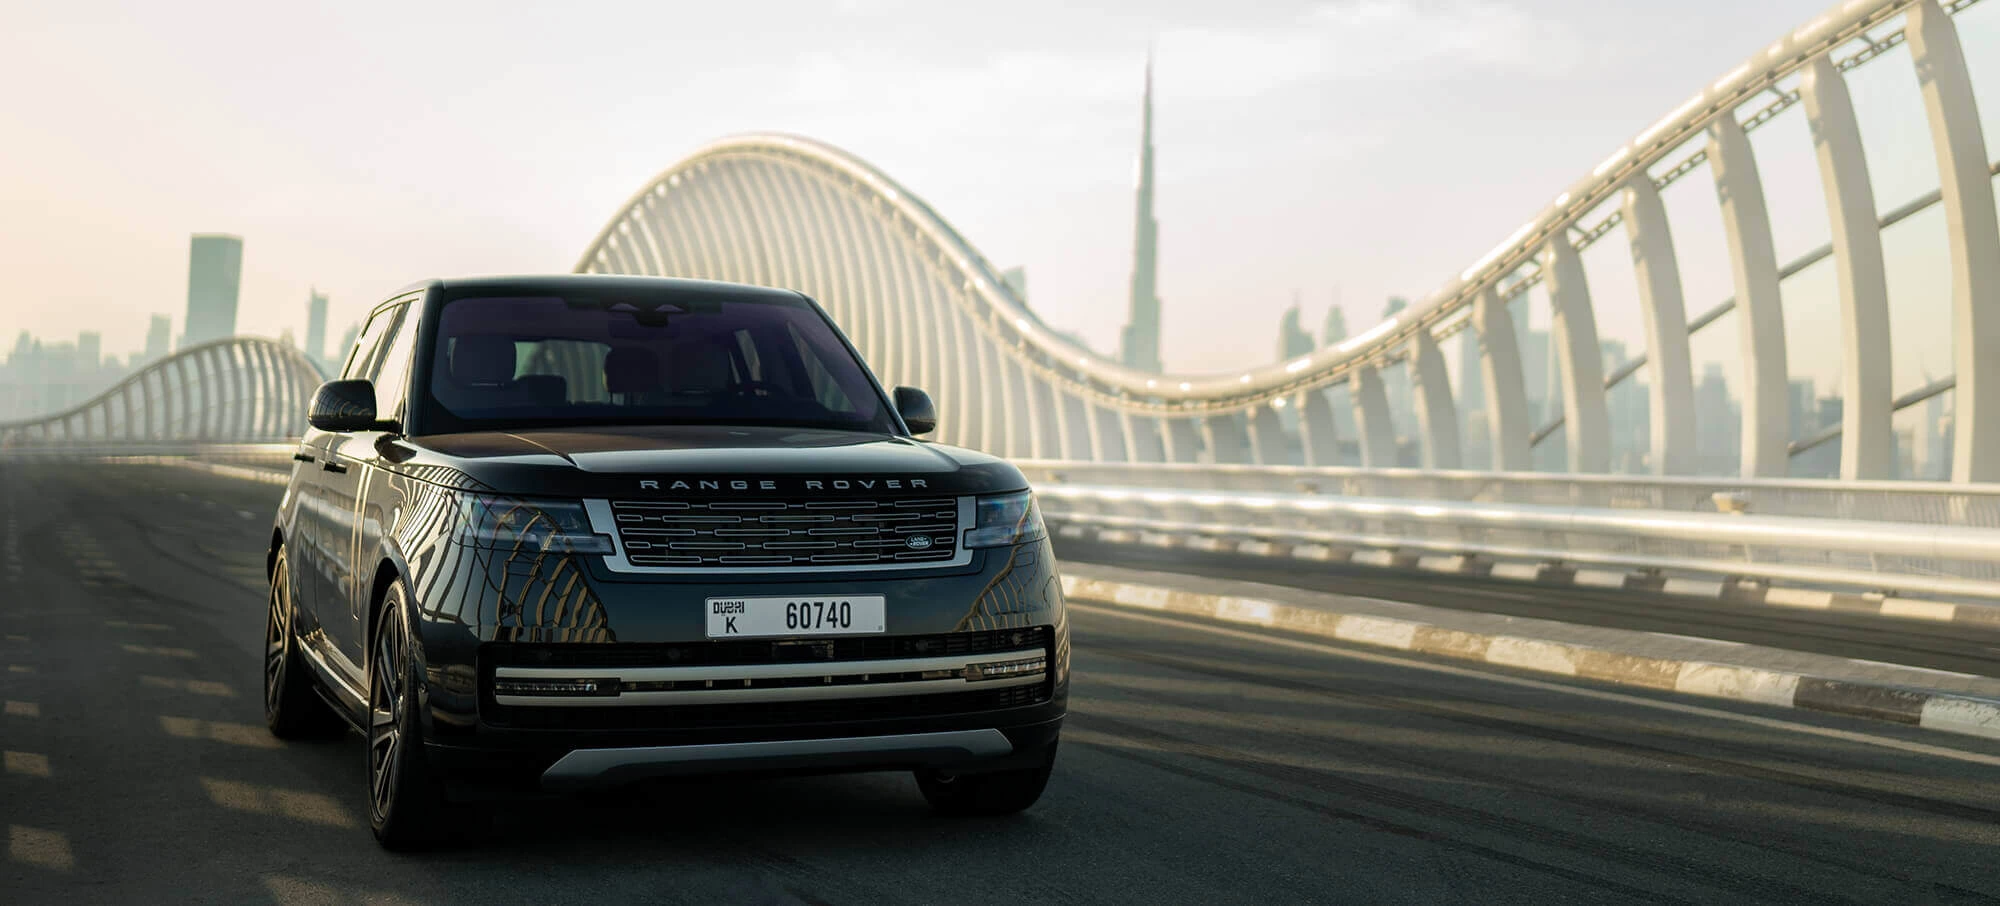 Range Rover mieten Dubai